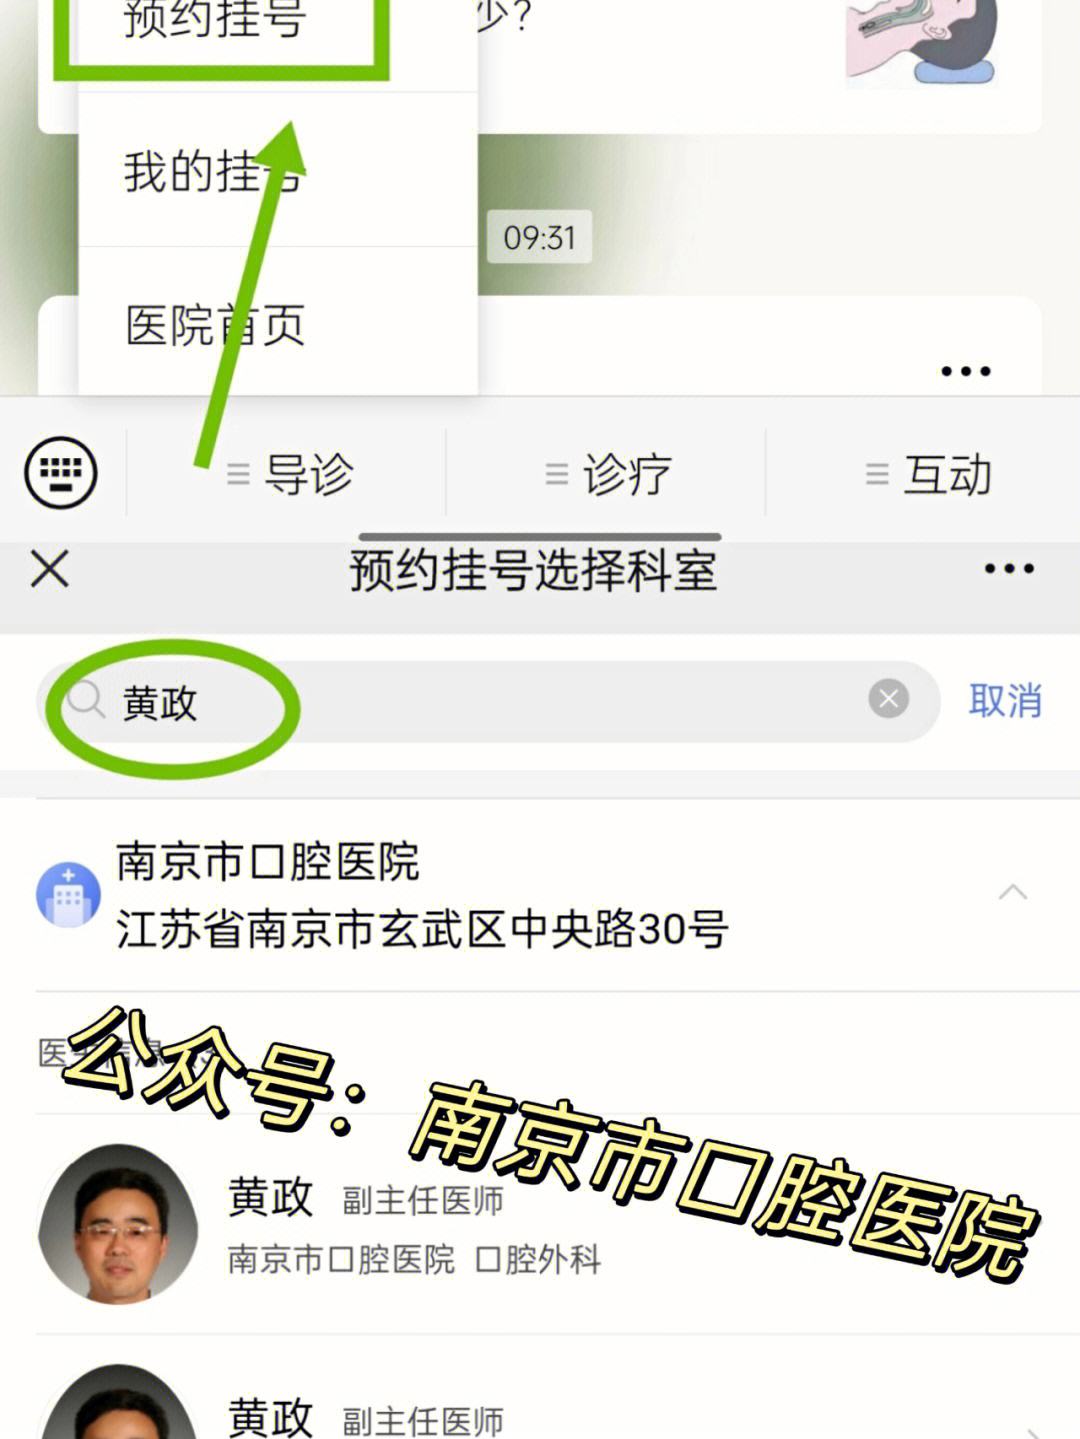 关于北京口腔医院支持医院取号全程跑腿!的信息